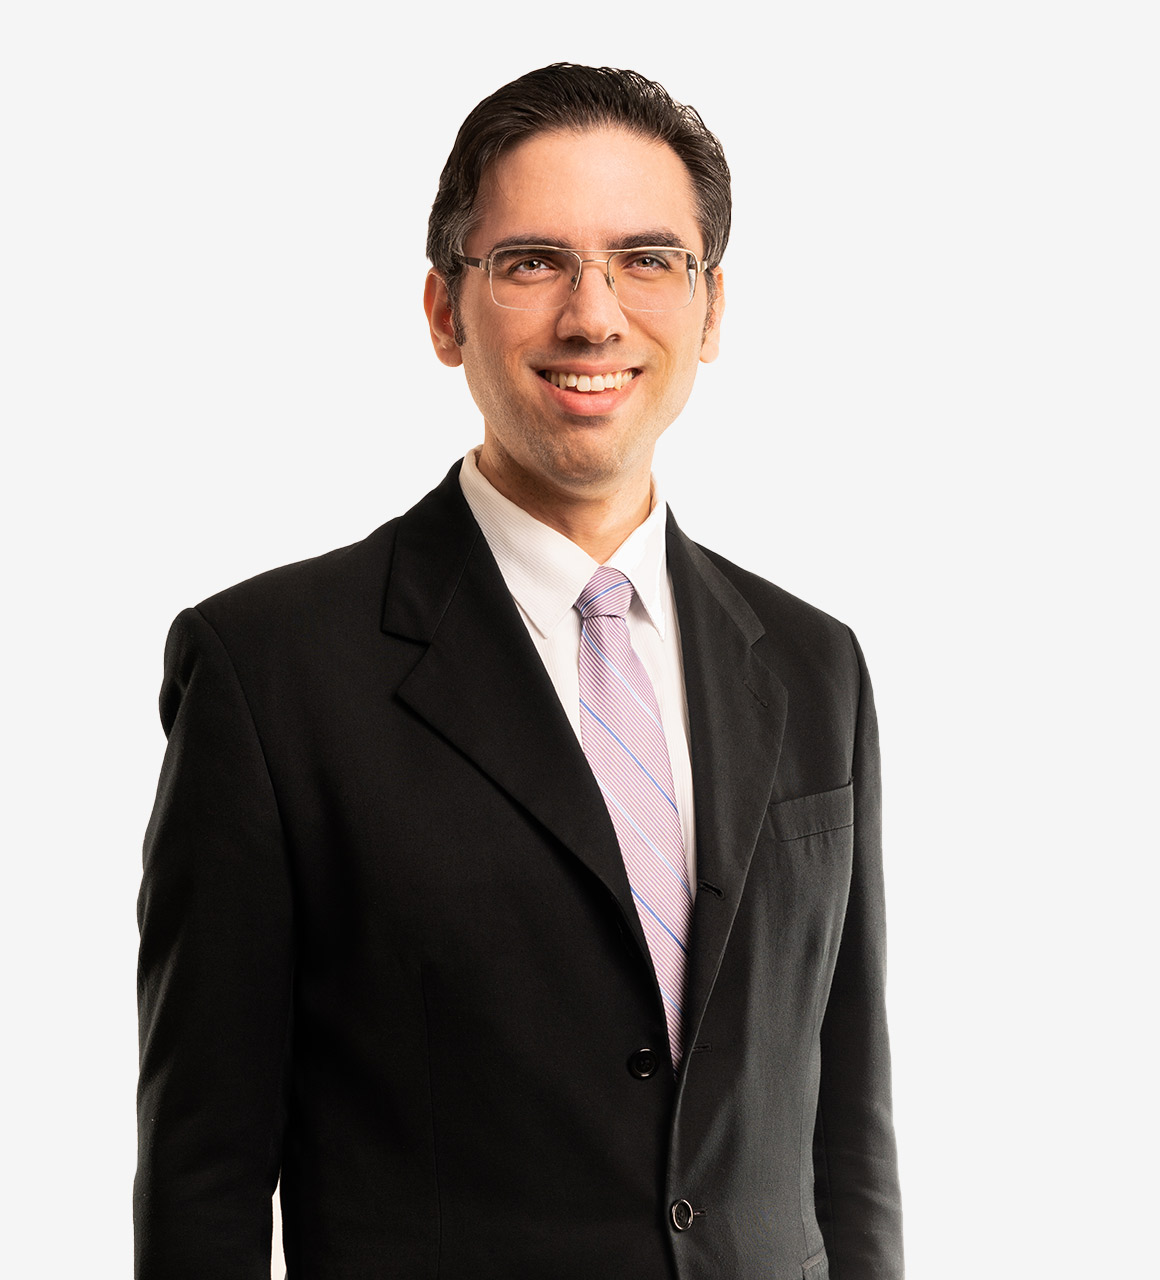 Jacob S. Zodieru, Attorney, Arent Fox